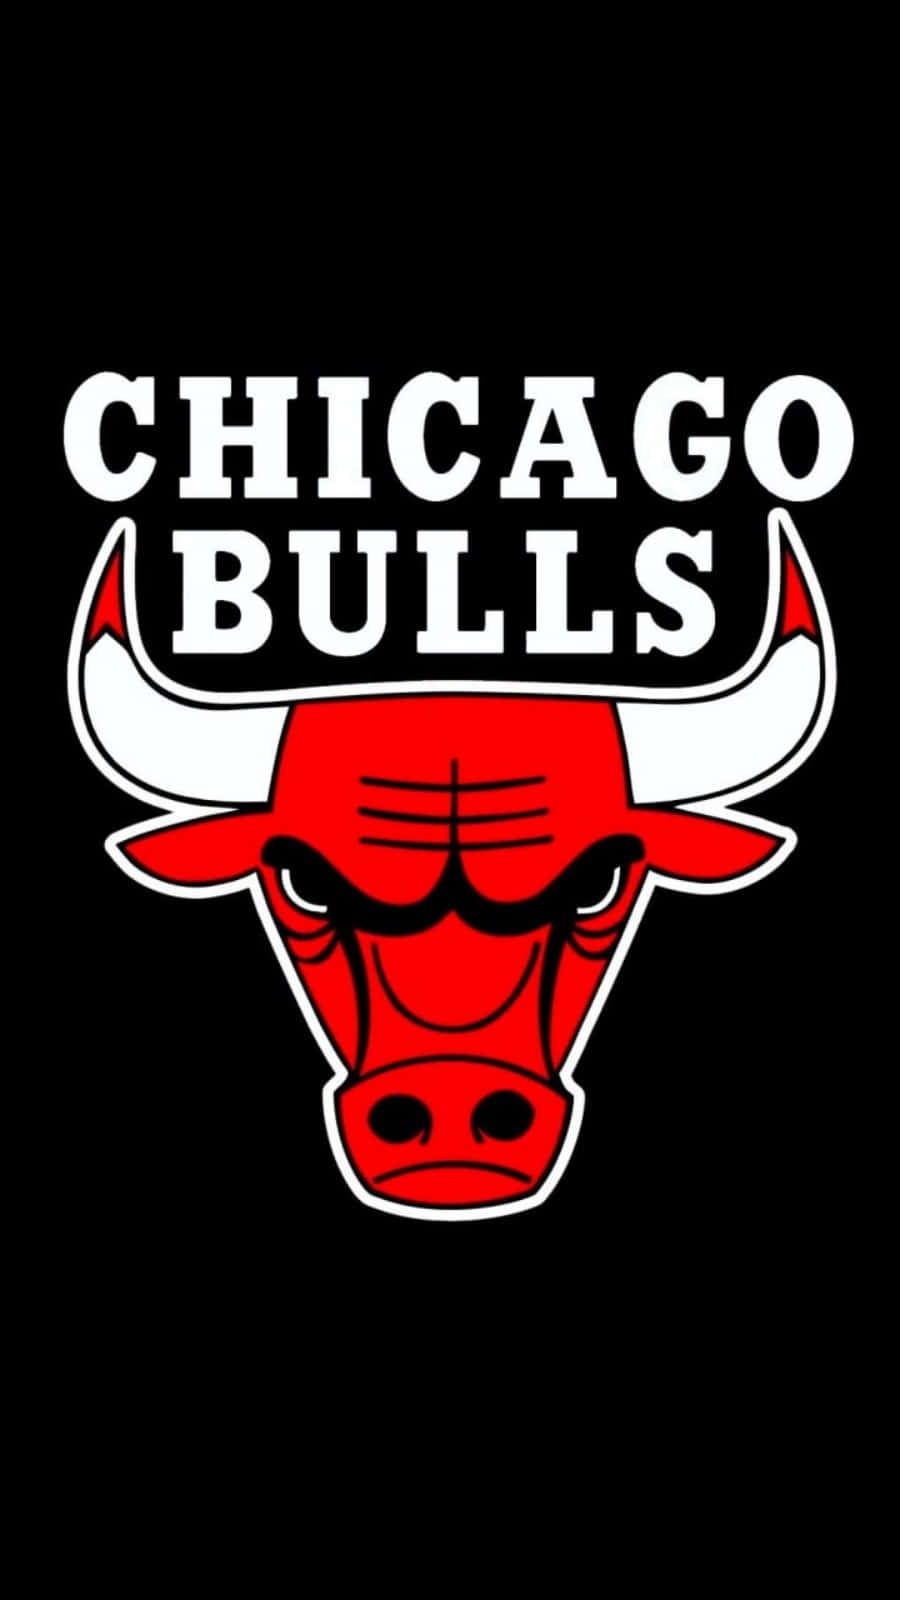 Visaupp Din Chicago Bulls-stolthet På Din Mobiltelefon! Wallpaper